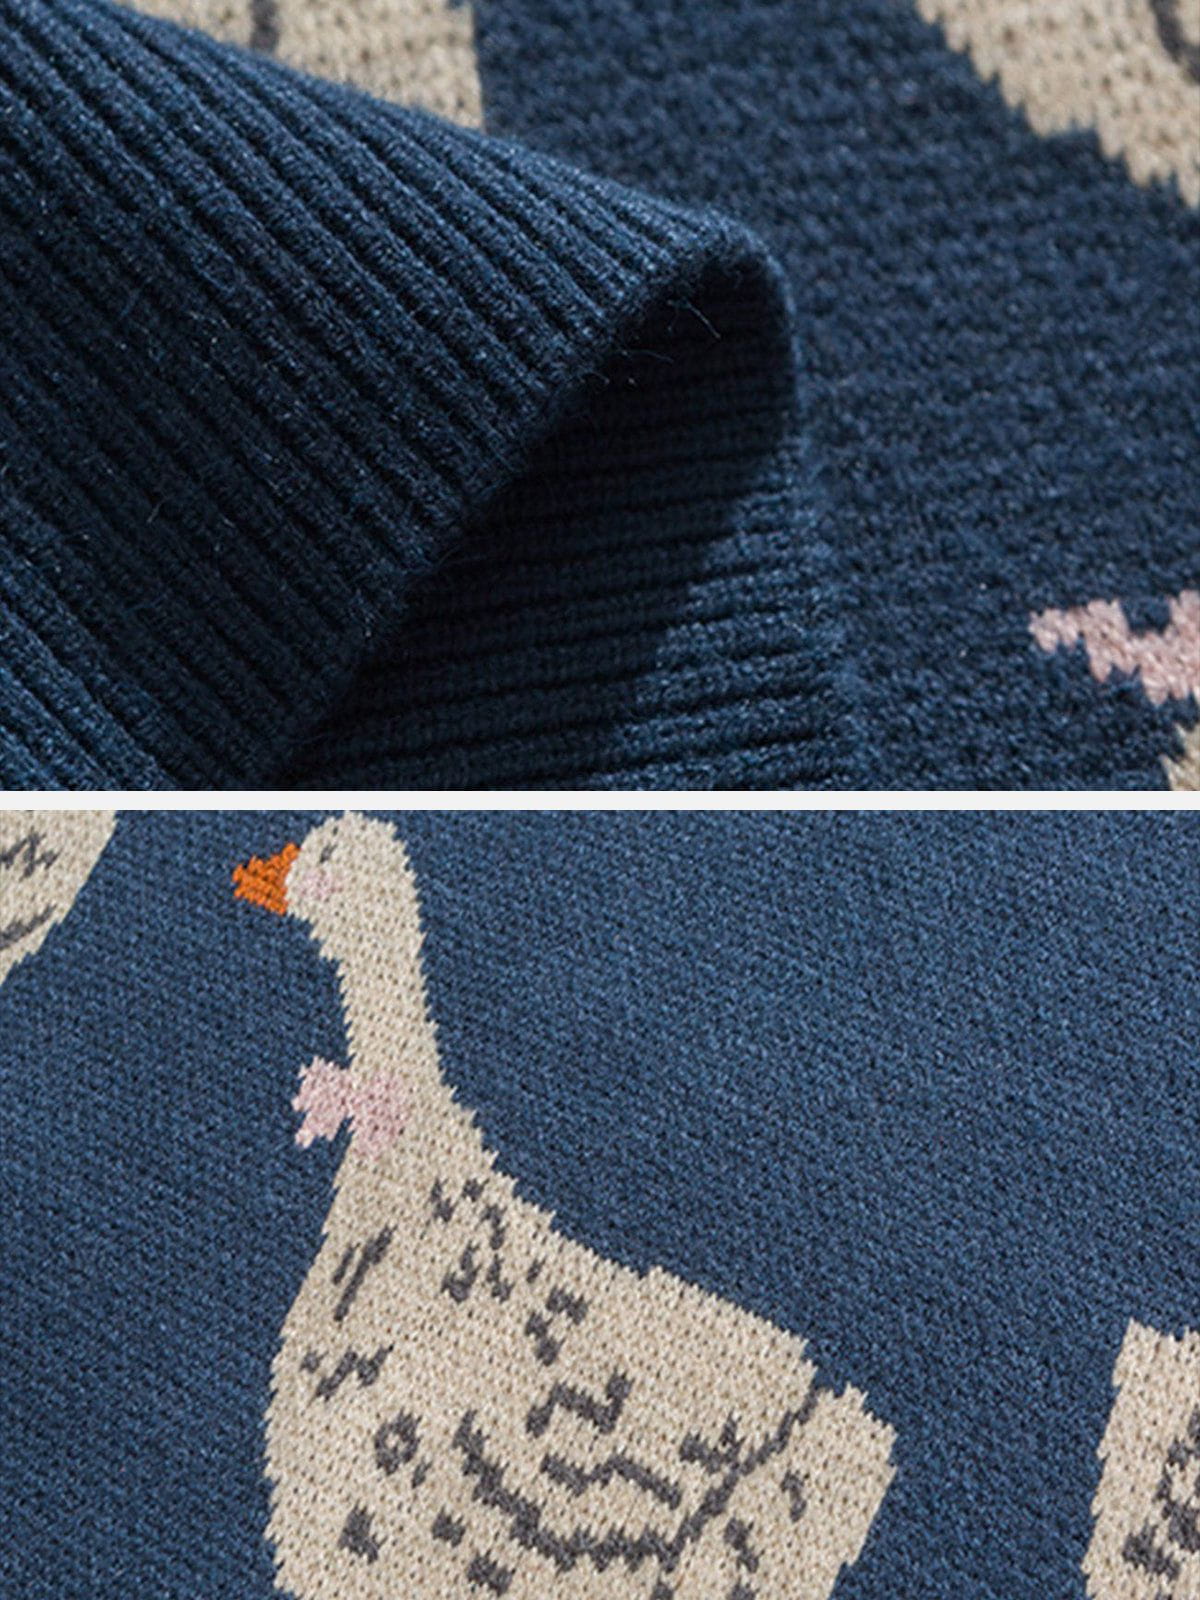 Cute Duck Knit Sweater Streetwear Brand Techwear Combat Tactical YUGEN THEORY